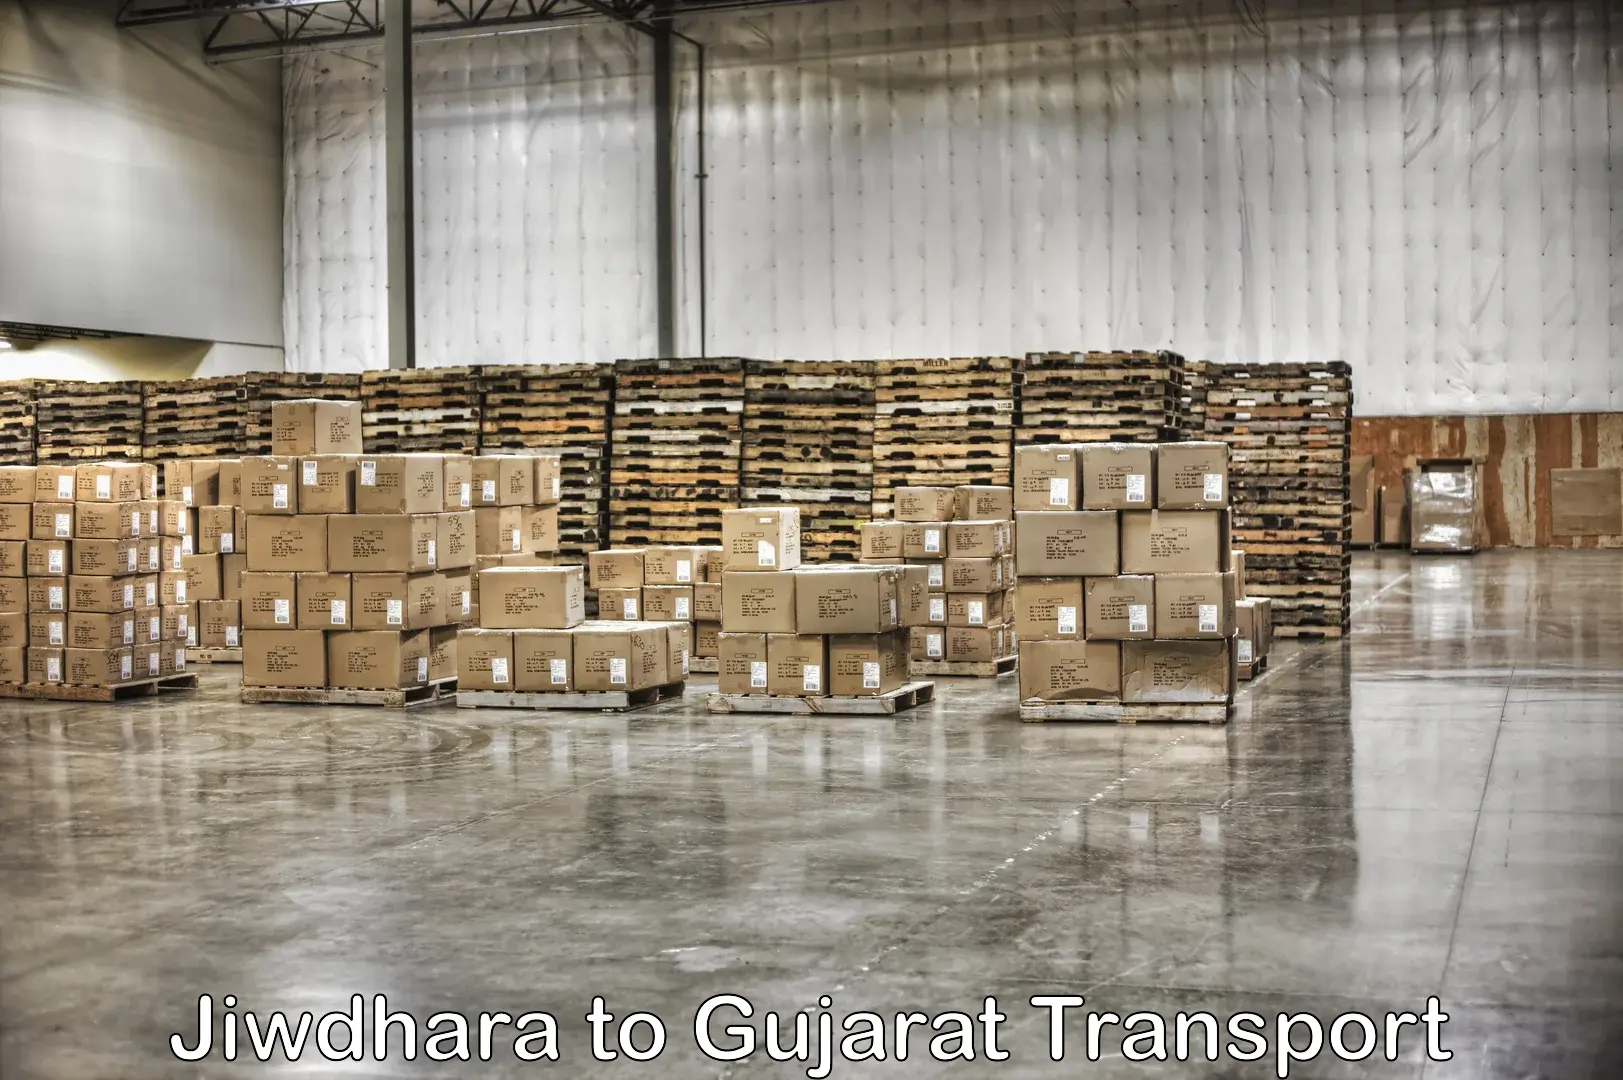 Commercial transport service Jiwdhara to Kalol Gujarat